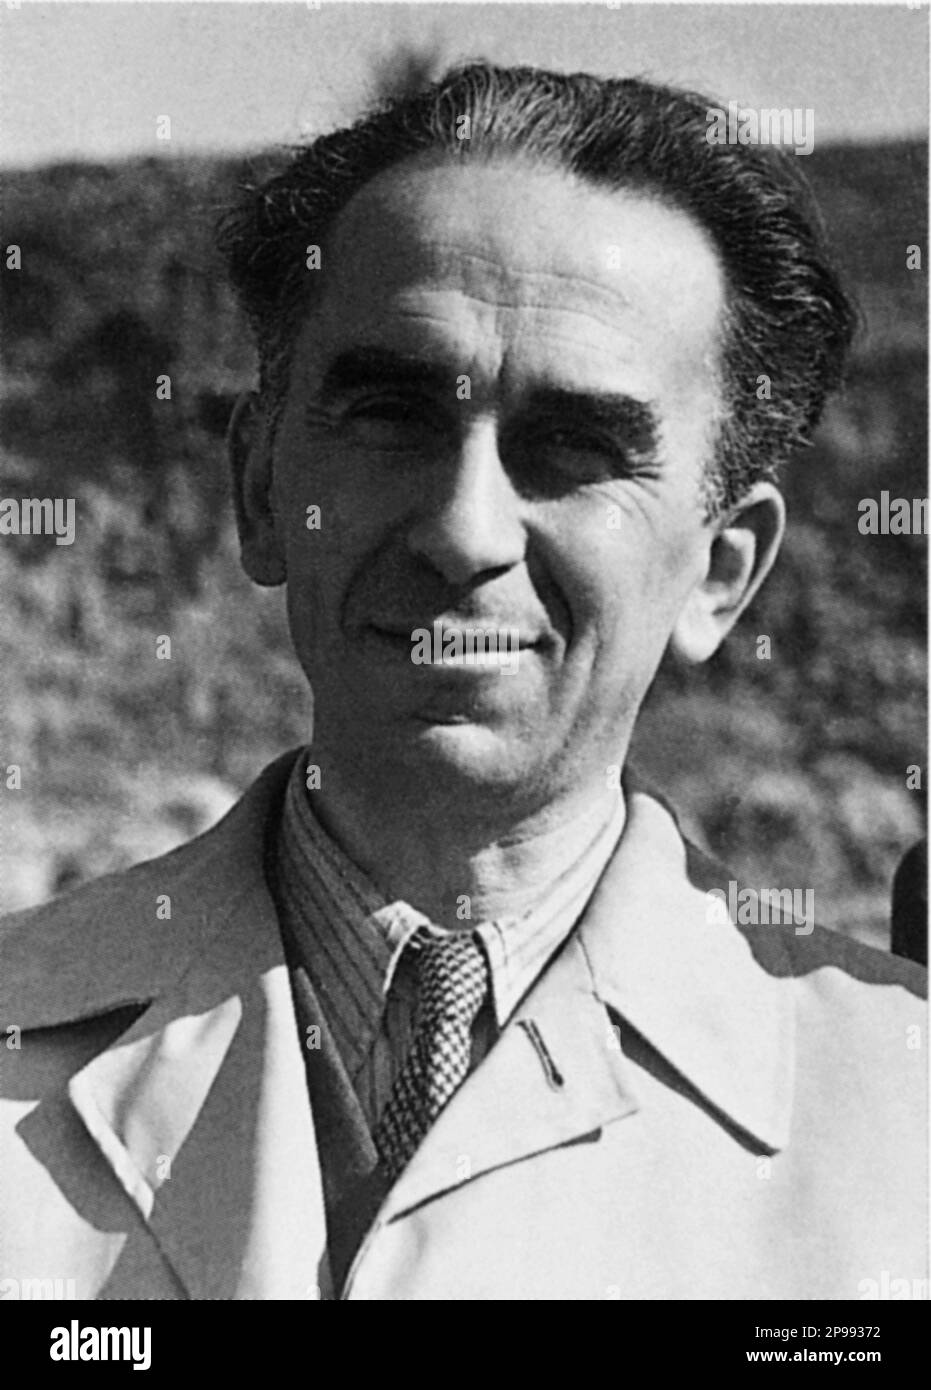 Il politico italiano partigiano e antifascista LUIGI LONGO ( 1900 - 1980 ), noto anche come Gallo . Era politico comunista e segretario del Partito comunista italiano ( P.C.I. ) Dal 1964 al 1972 - POLITICO - POLITICA - POLITICA - COMUNISTA - COMUNISMO - COMUNISTA - COMUNISMO - foto storiche - foto storica - ritratto - ritratto - cravatta - cravatta - colletto - colletto - RESISTENZA - LIBERAZIONE - ANTIFASCISMO --- Archivio GBB Foto Stock